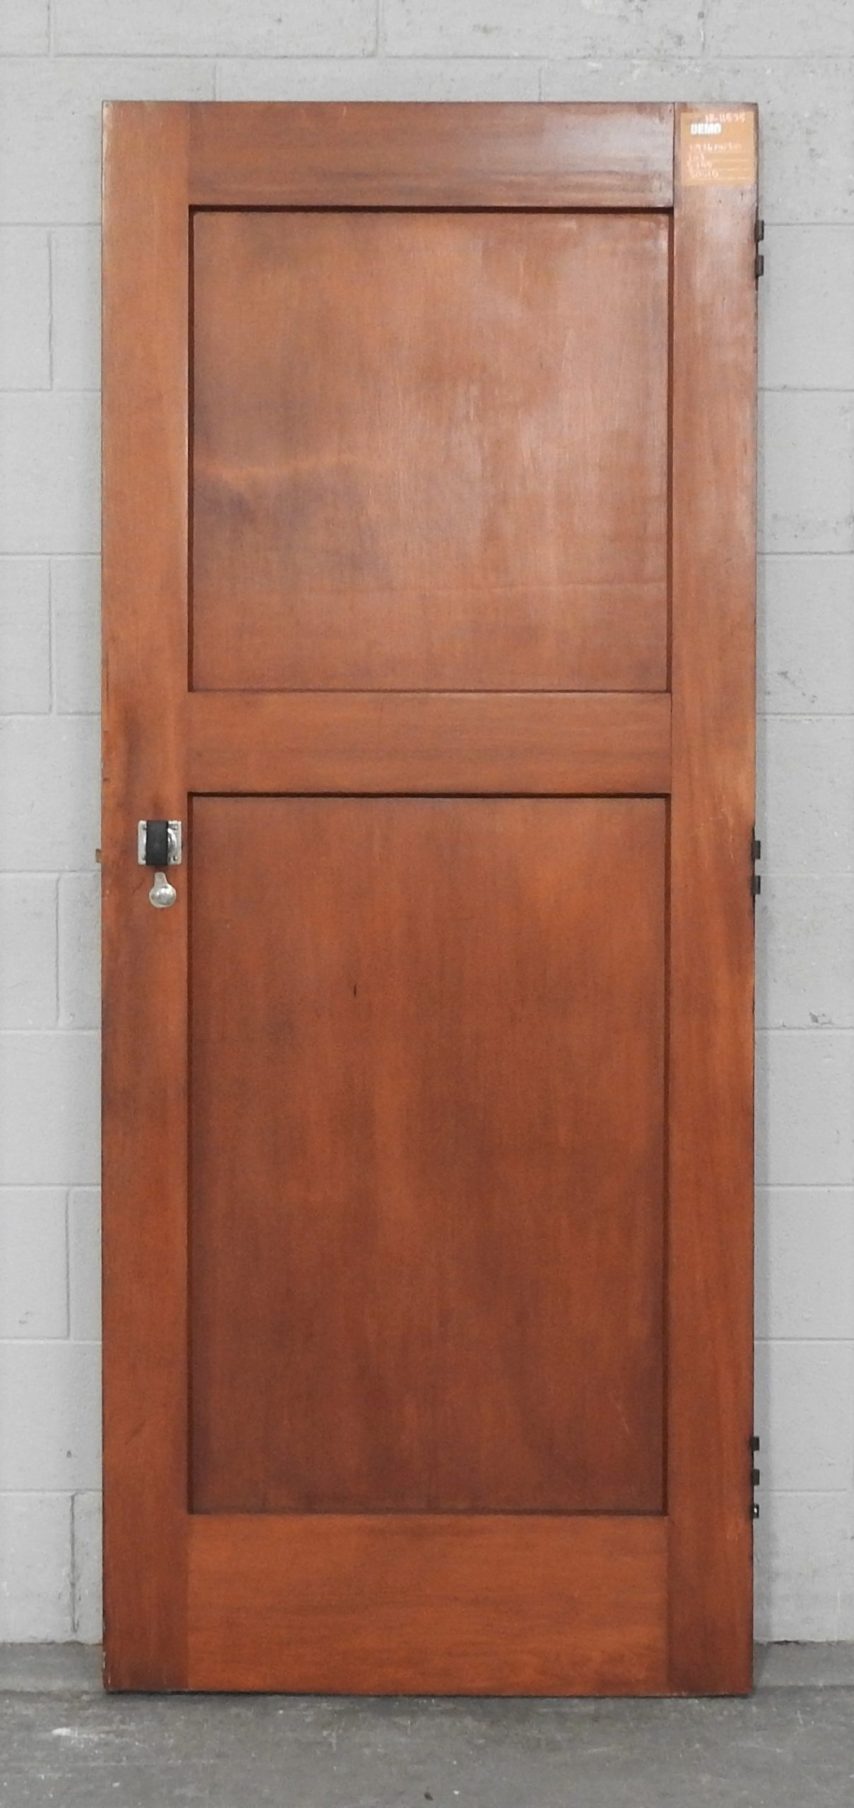 Wooden Bungalow Interior 2 Panel Door - Unhung